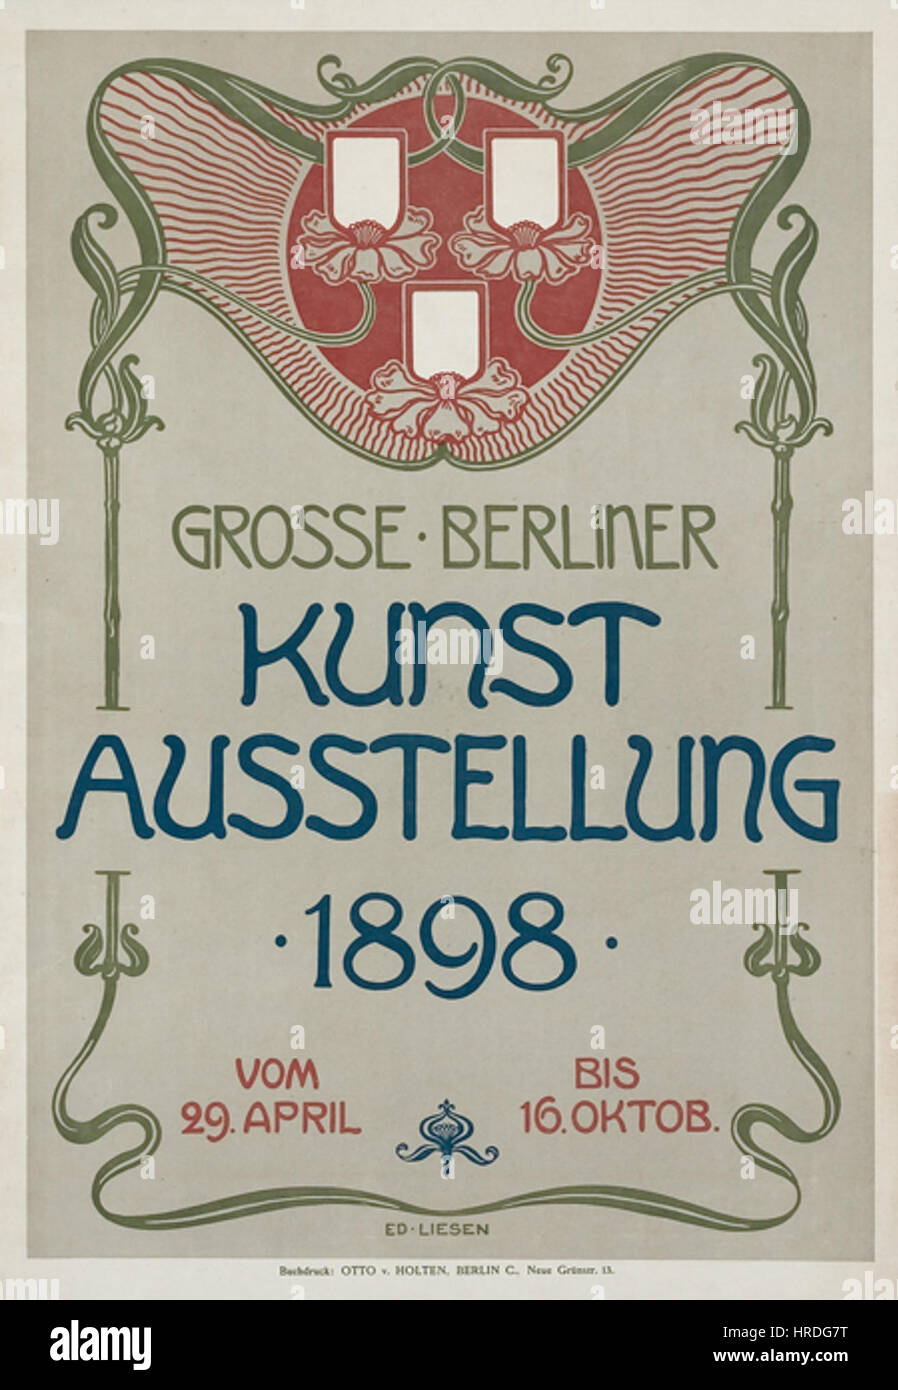 Grosse Berliner Kunstausstellung 1898 von Eduard Liesen Stock Photo